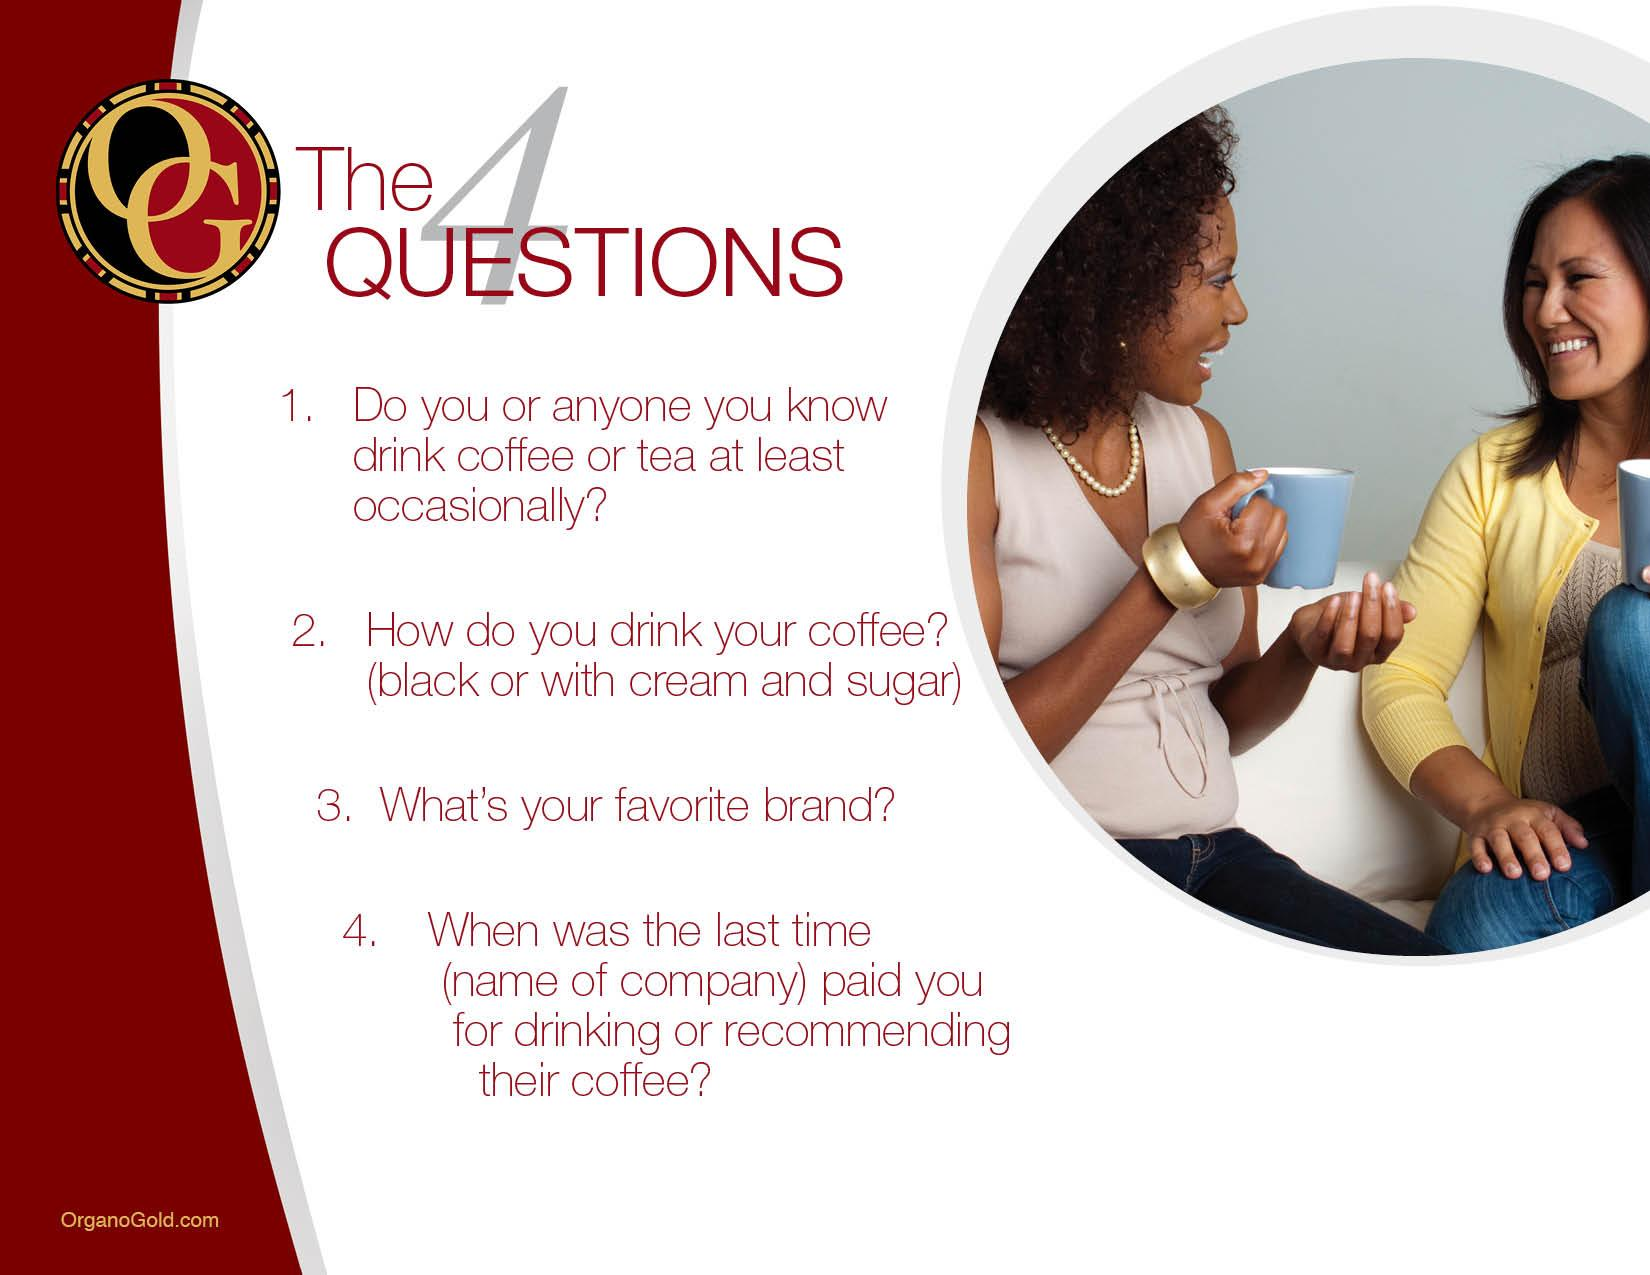 1. Apakah anda atau teman anda tau orang yang sedang minum kopi atau teh? 2. Bagaimana kamu minum kopi?